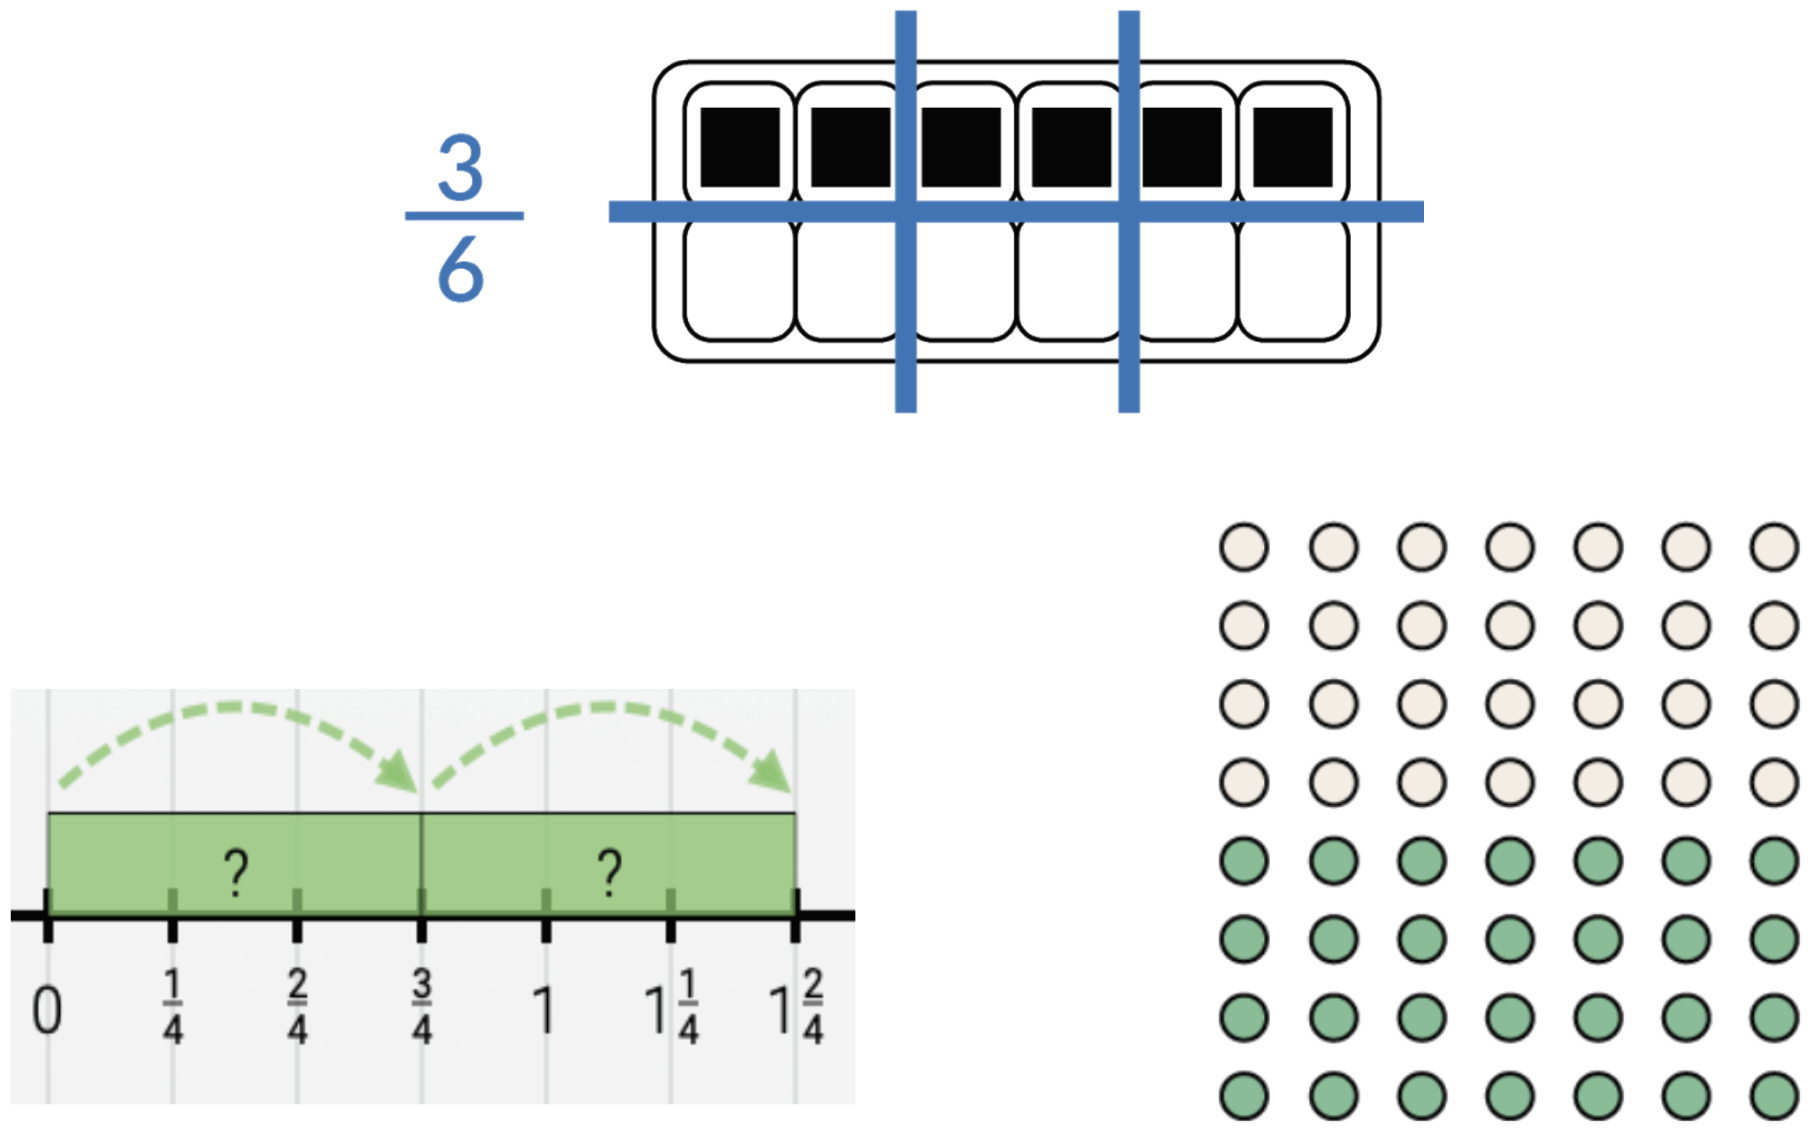 Primero, un cartón de huevos dividido en 6 secciones, la fracción 3 sextos. Después, una recta numérica que muestra saltos de 0 a 3 cuartos a 1 y 2 cuartos. Luego, una cuadrícula de puntos de 8 por 8, la mitad de arriba es blanca y la mitad de abajo es verde.